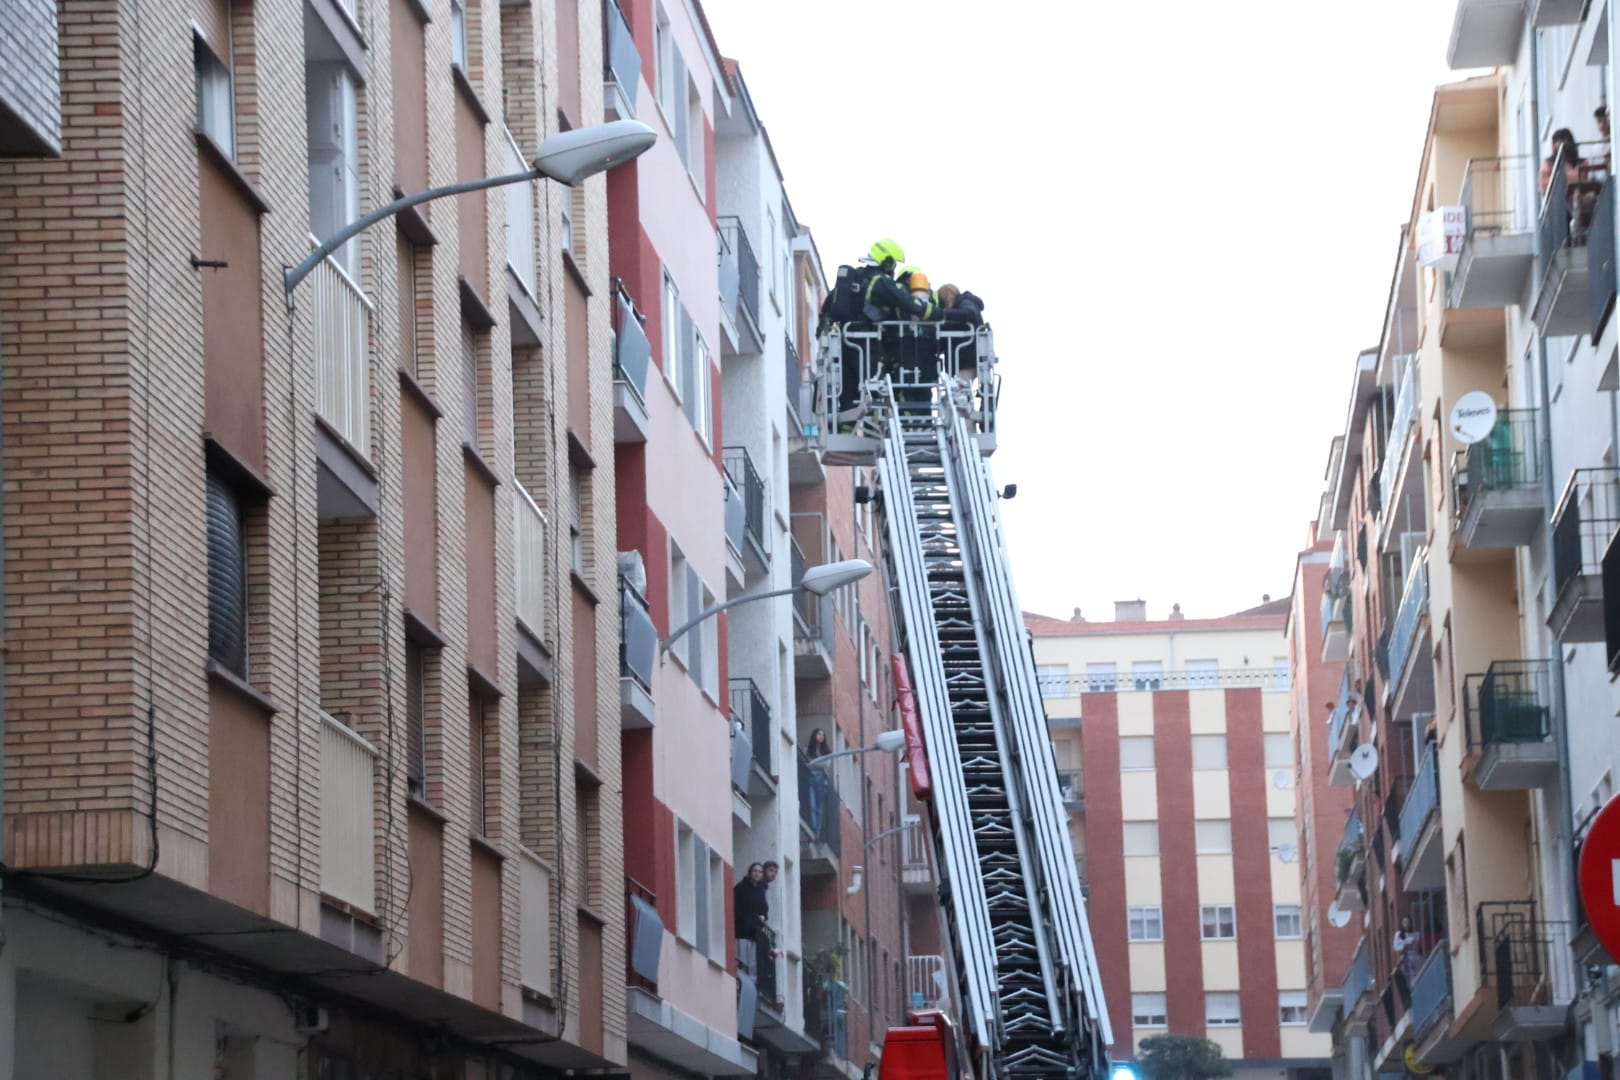 Incendio en una vivienda en la calle León Felipe (2)